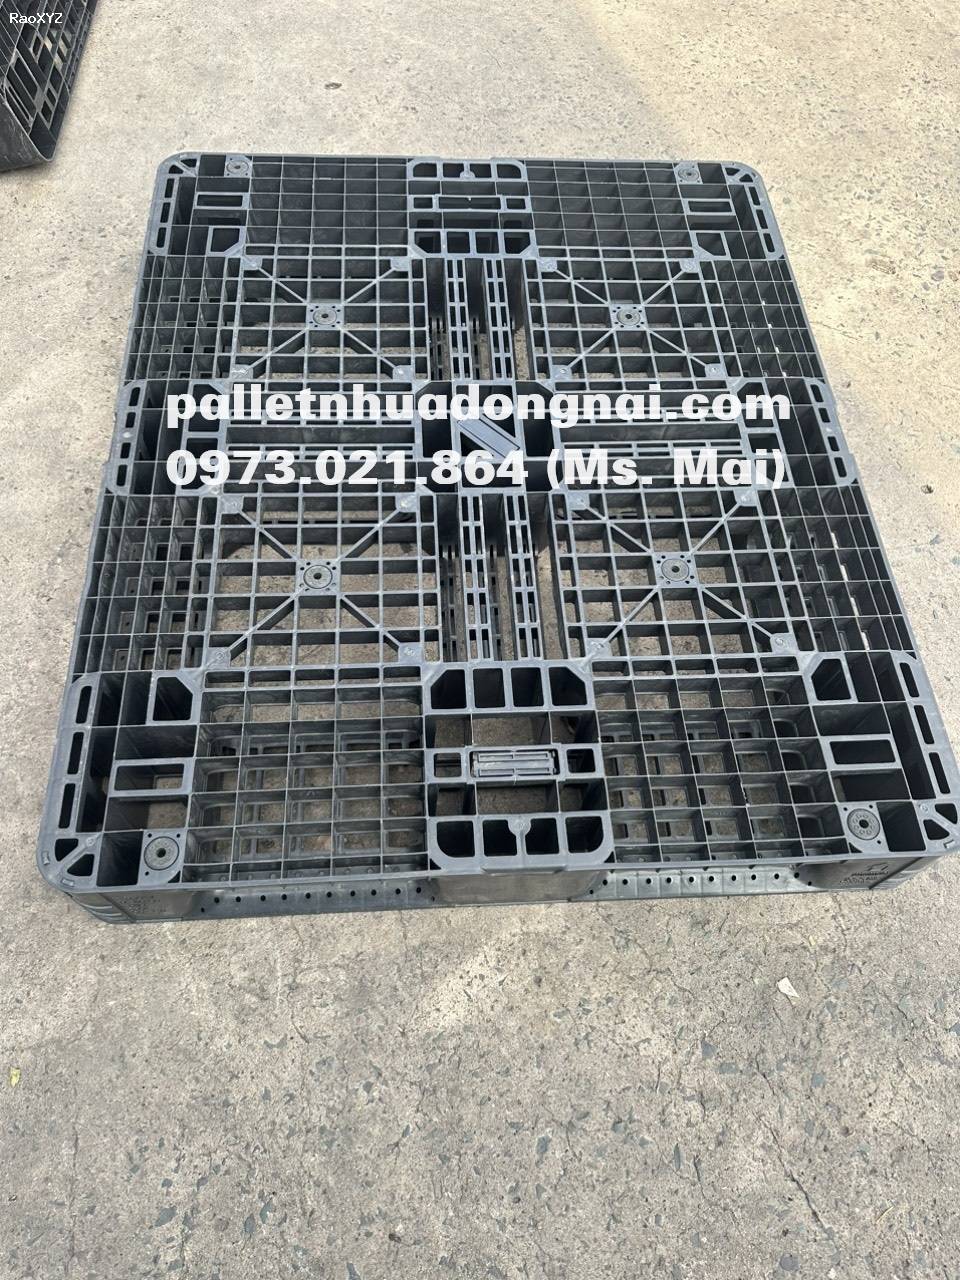 Pallet nhựa cũ tại Bà Rịa Vũng Tàu, liên hệ 0973021864 (24/7)